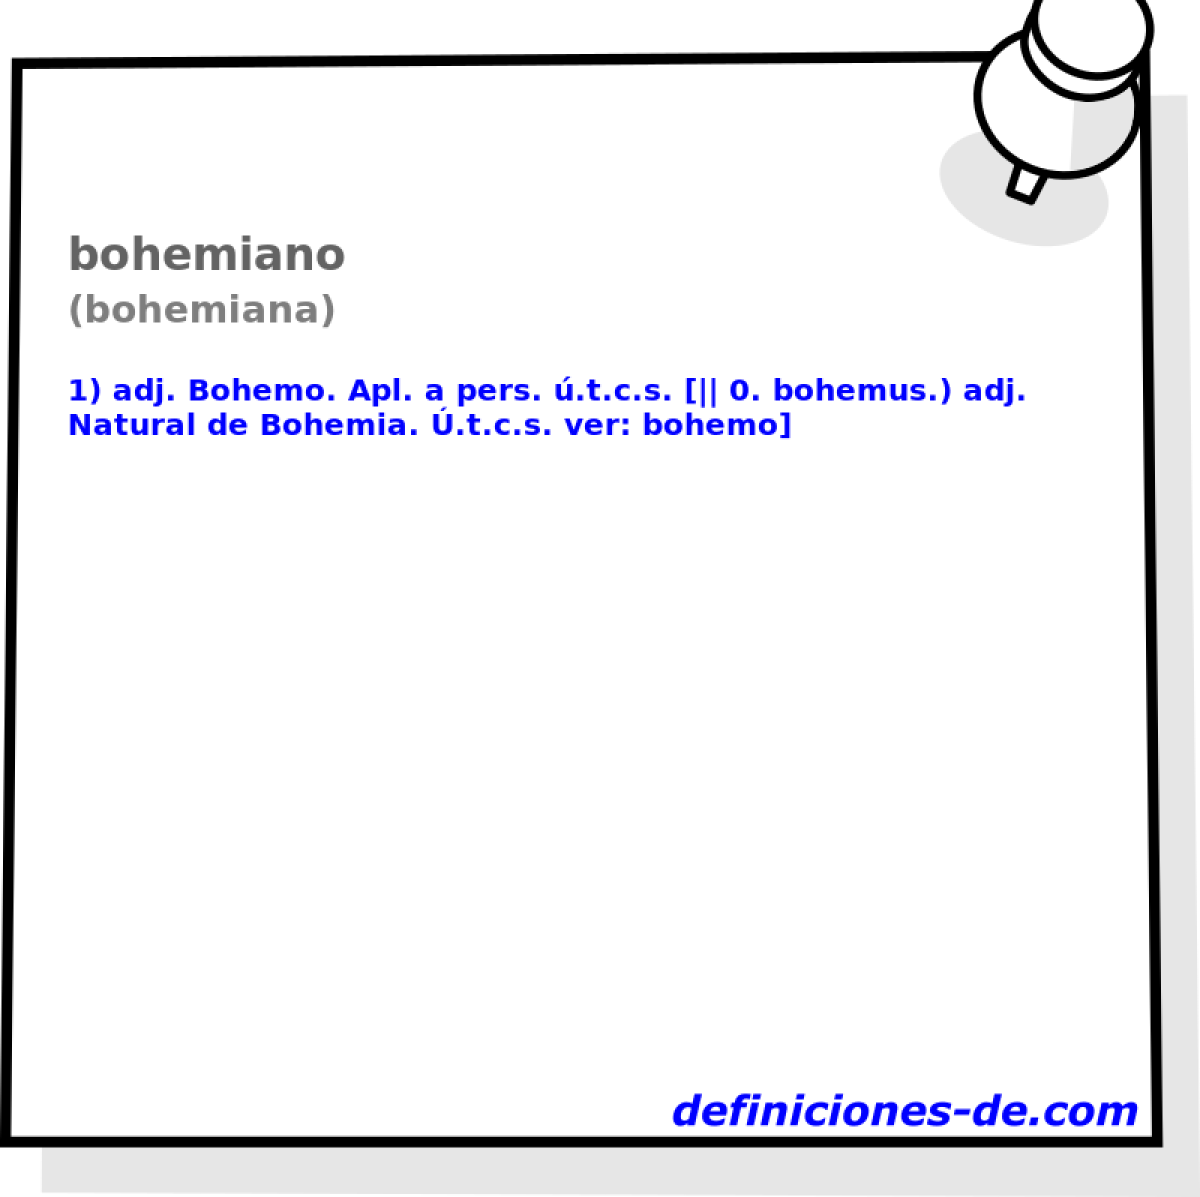 bohemiano (bohemiana)